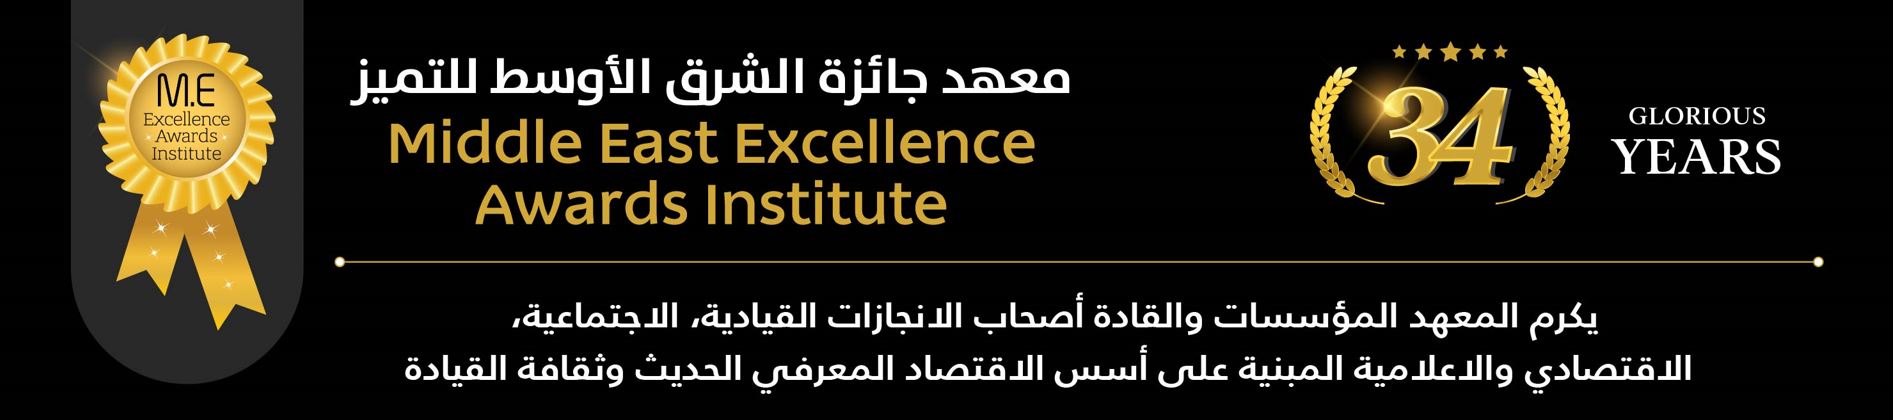 معهد جائزة الشرق الأوسط للتميز